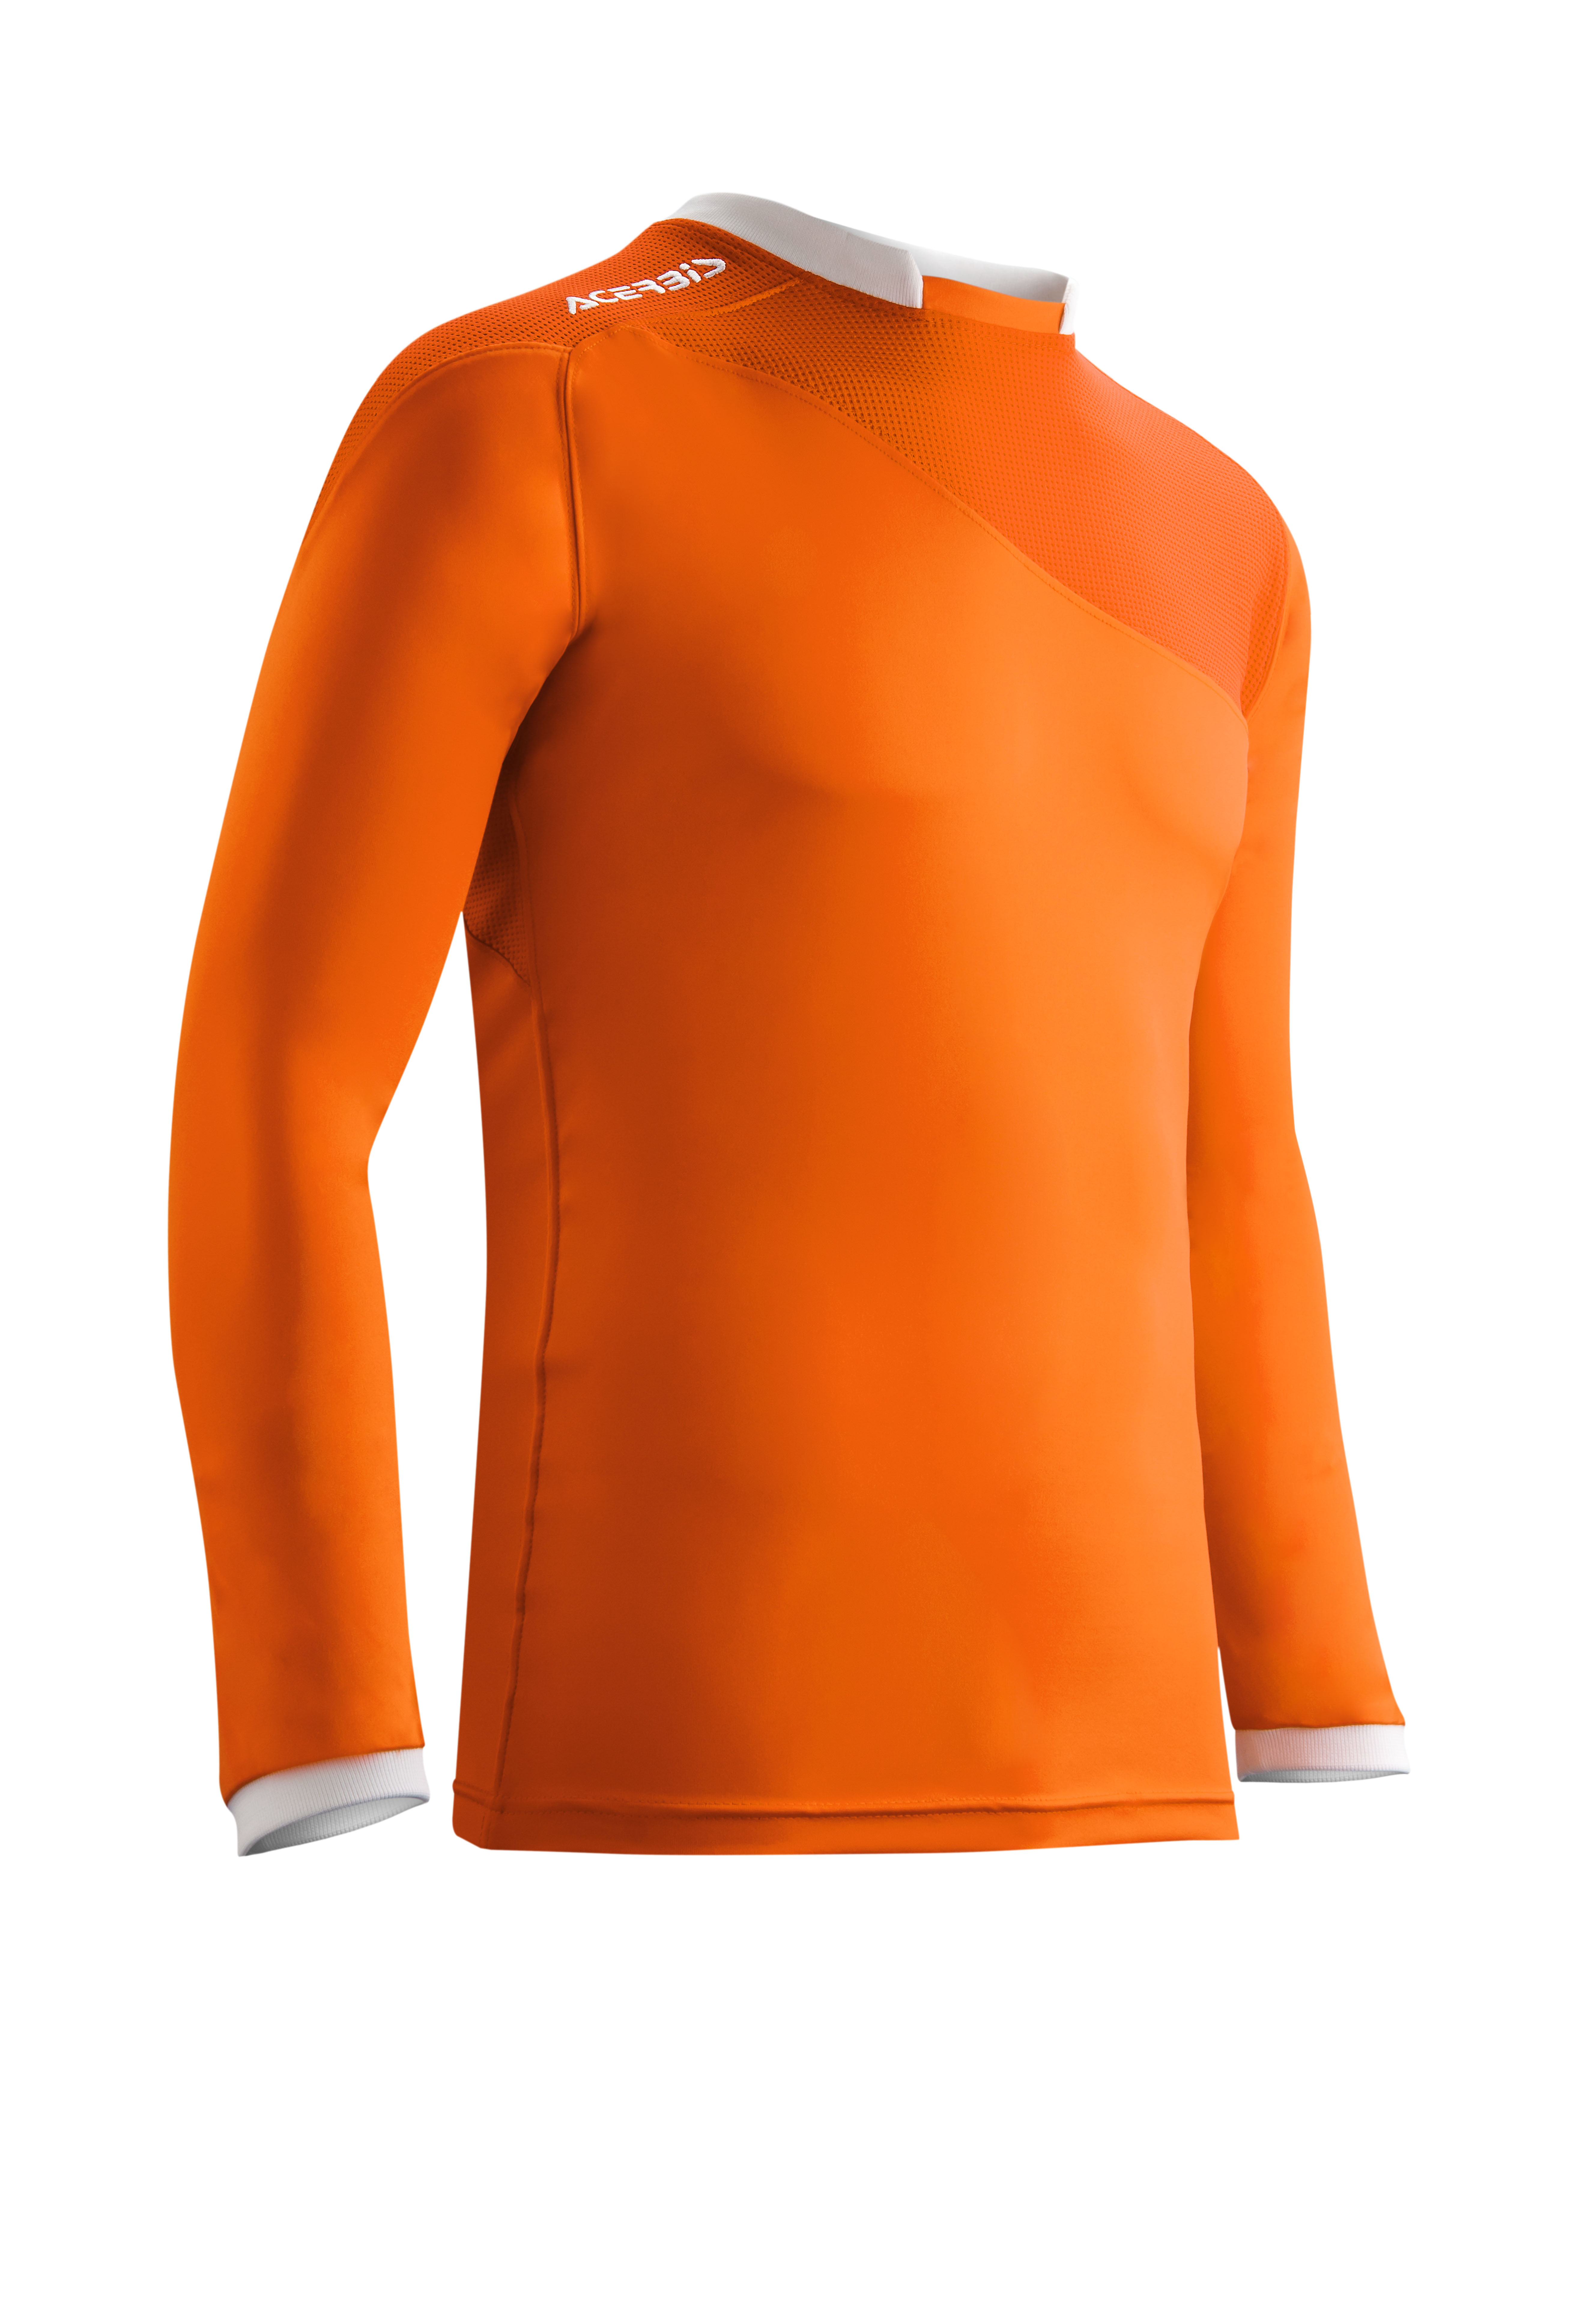 astro orange jersey